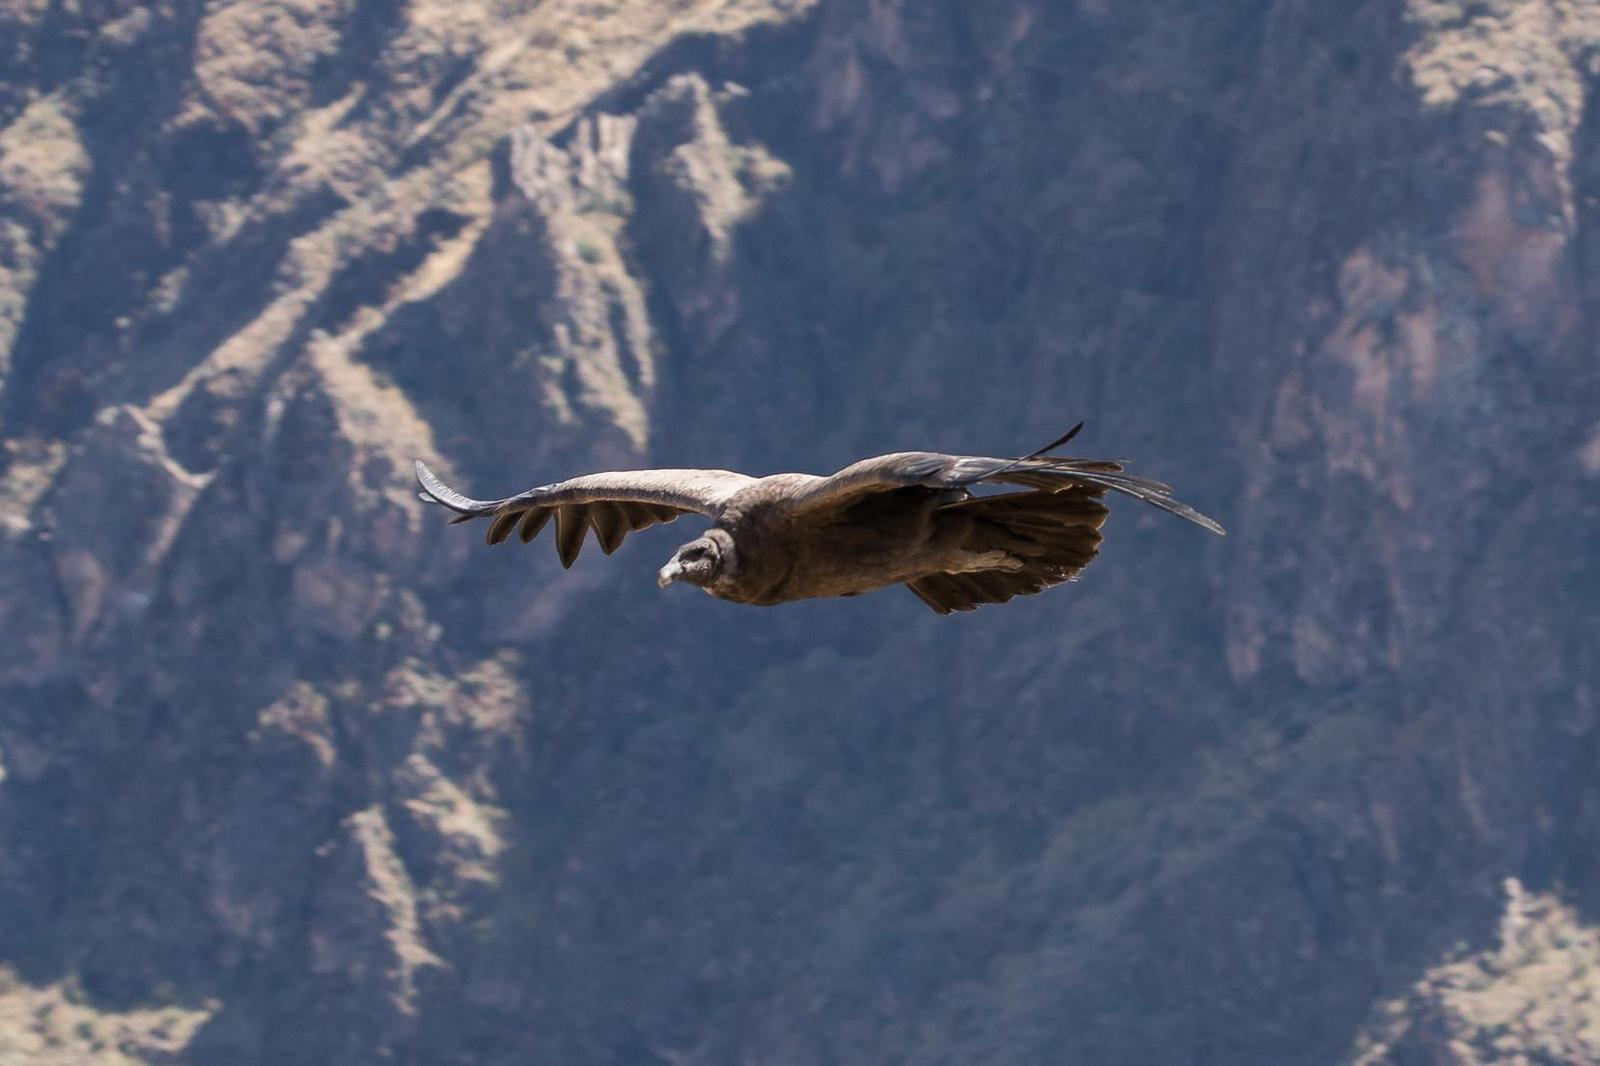 Andean Condor Photo by Gerald Hoekstra